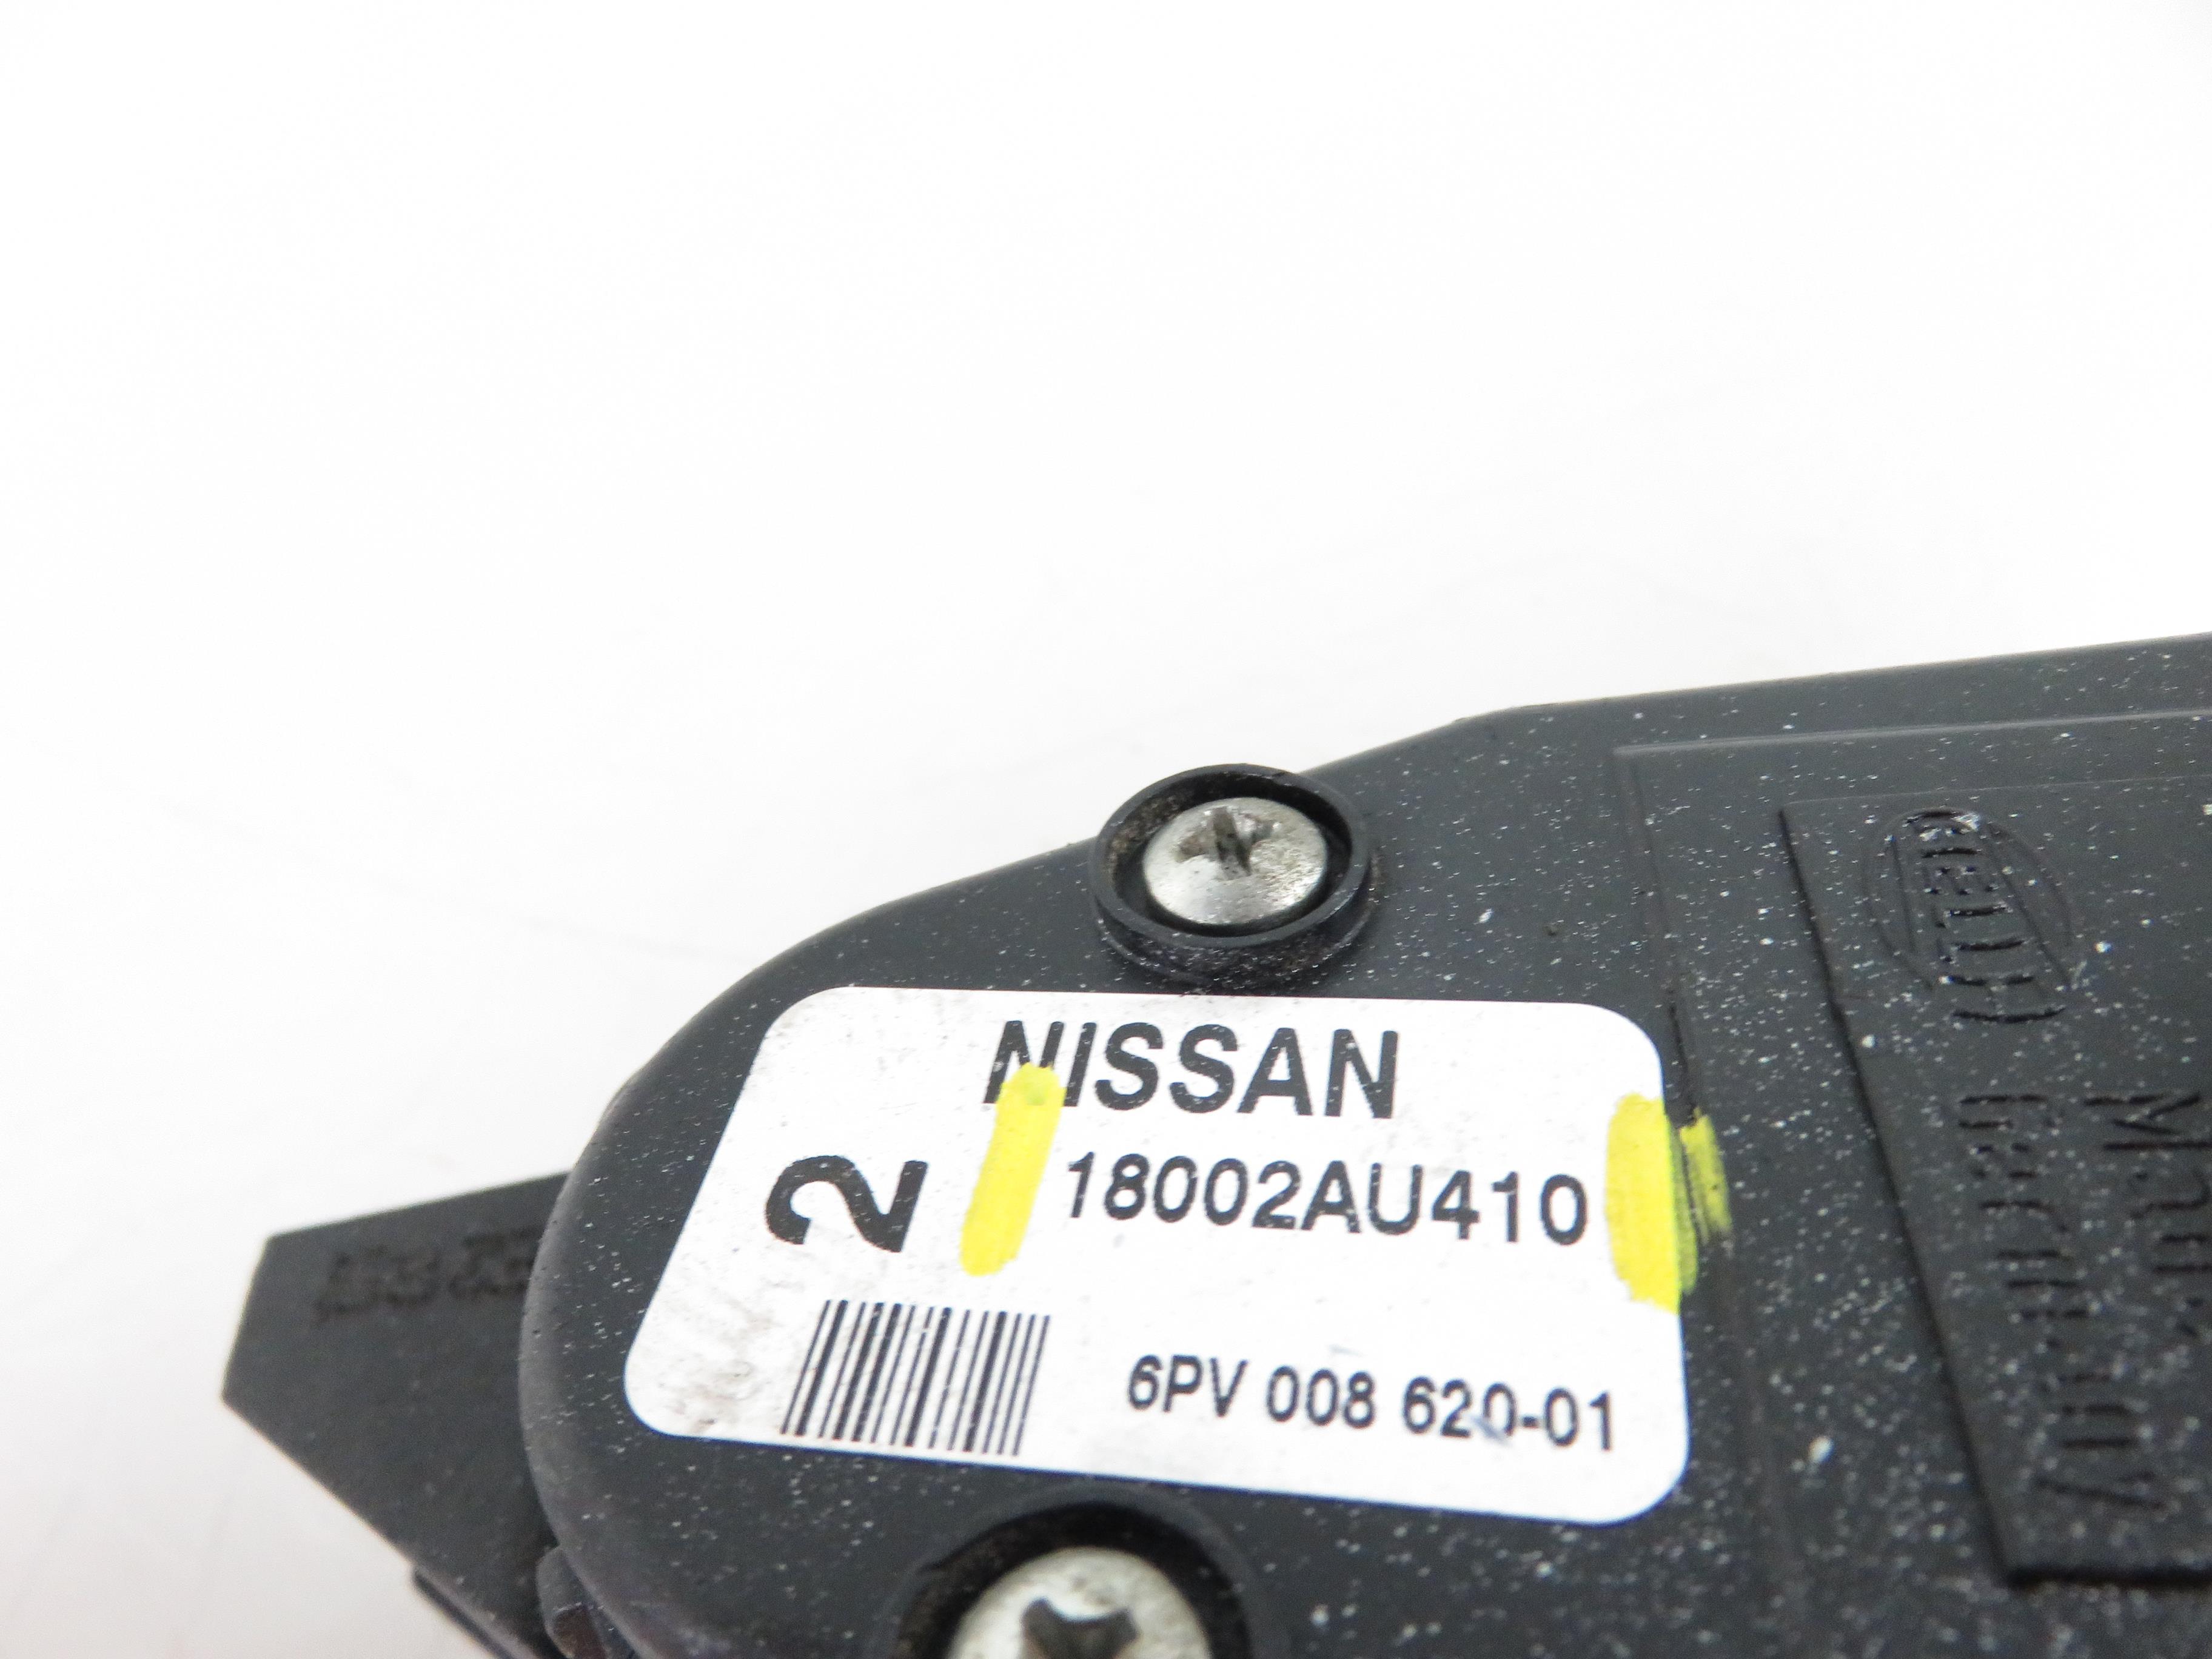 NISSAN Almera N16 (2000-2006) Педаль газа 18002au410 21229609